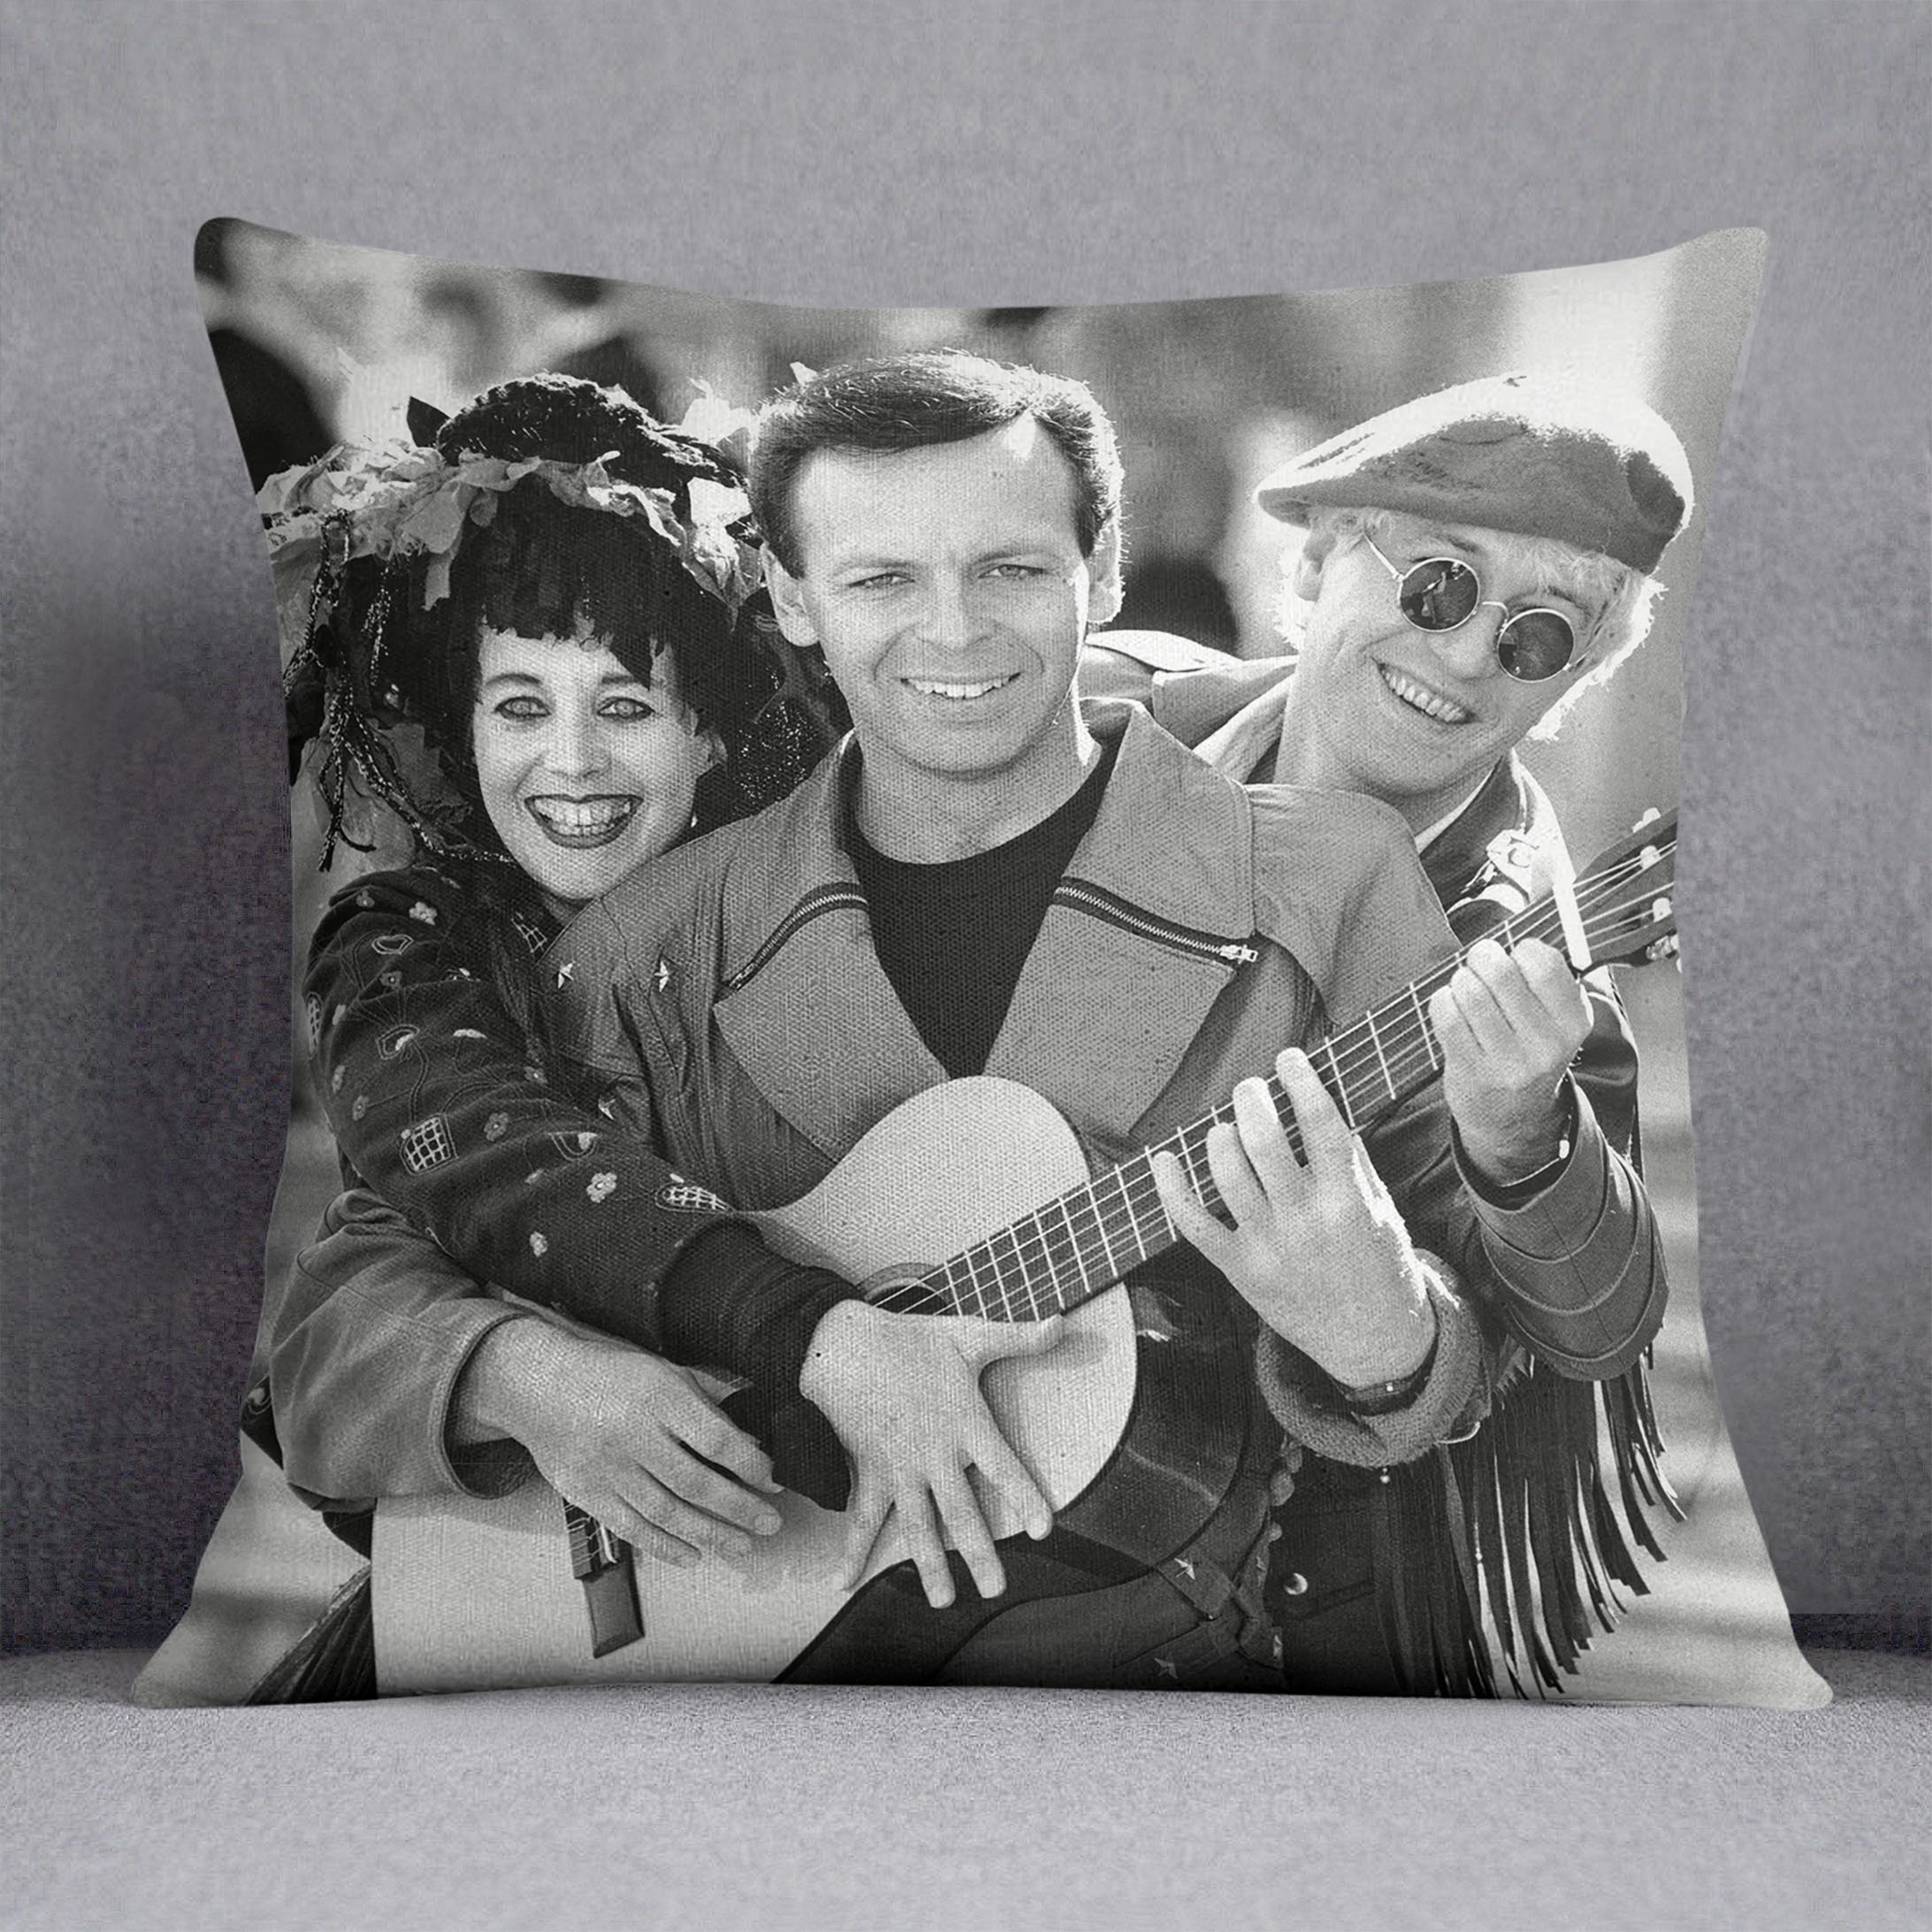 Gary Numan and friends Cushion